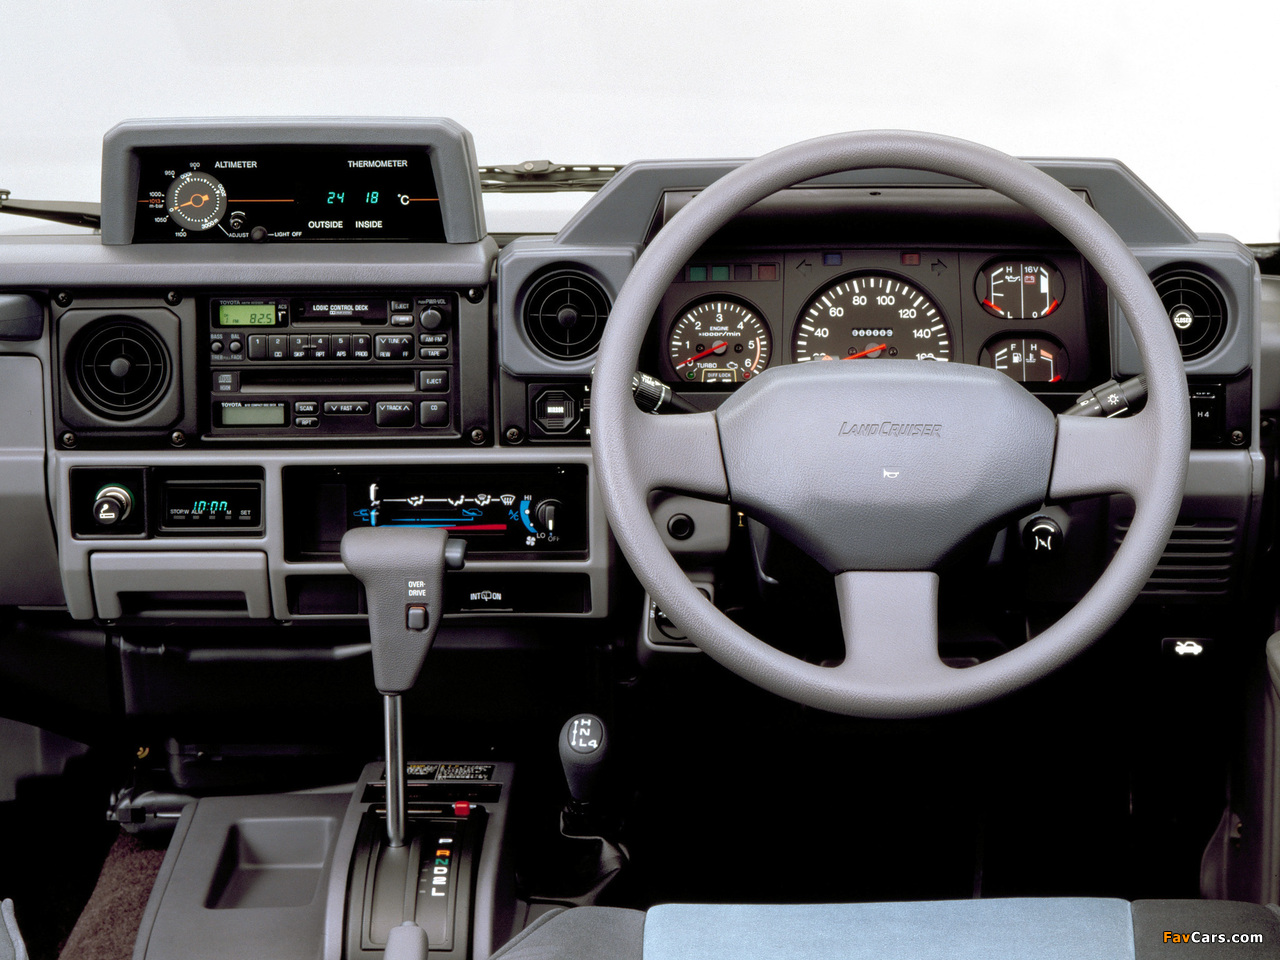 Toyota Land Cruiser Prado (J78) 1990–96 images (1280 x 960)